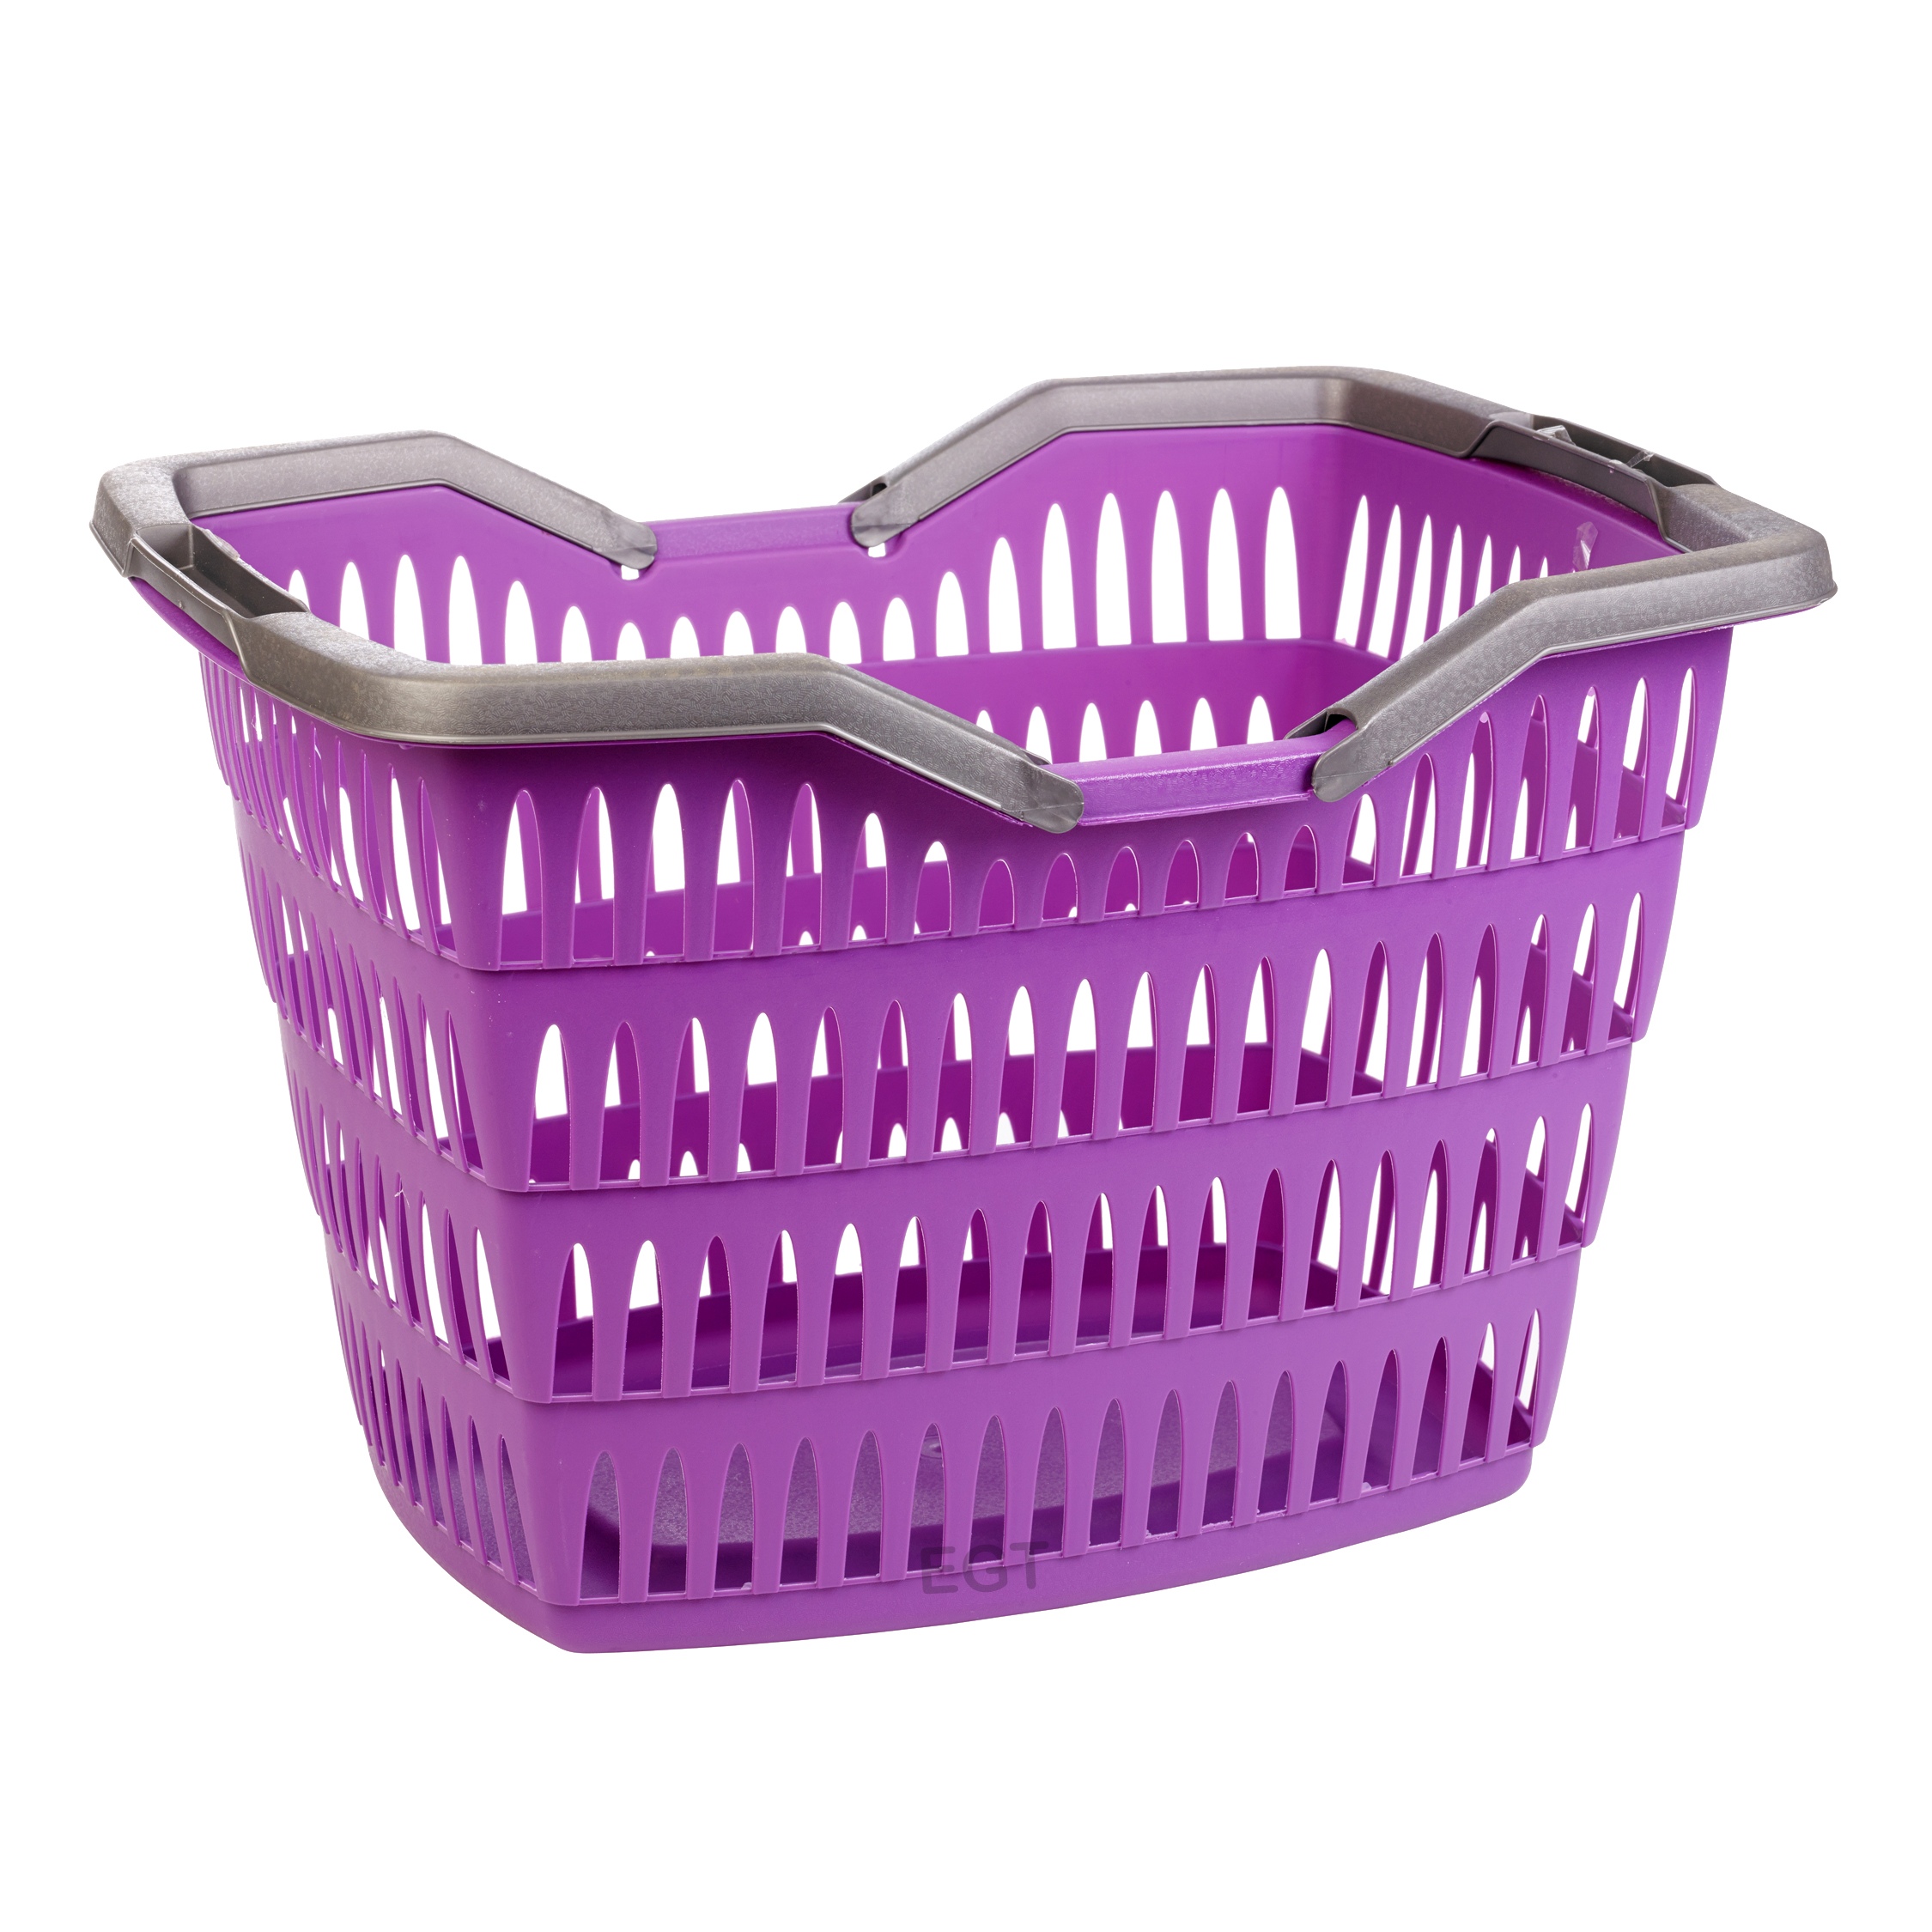 Large 30 Litre Laundry Basket With Folding Handles Storage Washing Bin ...